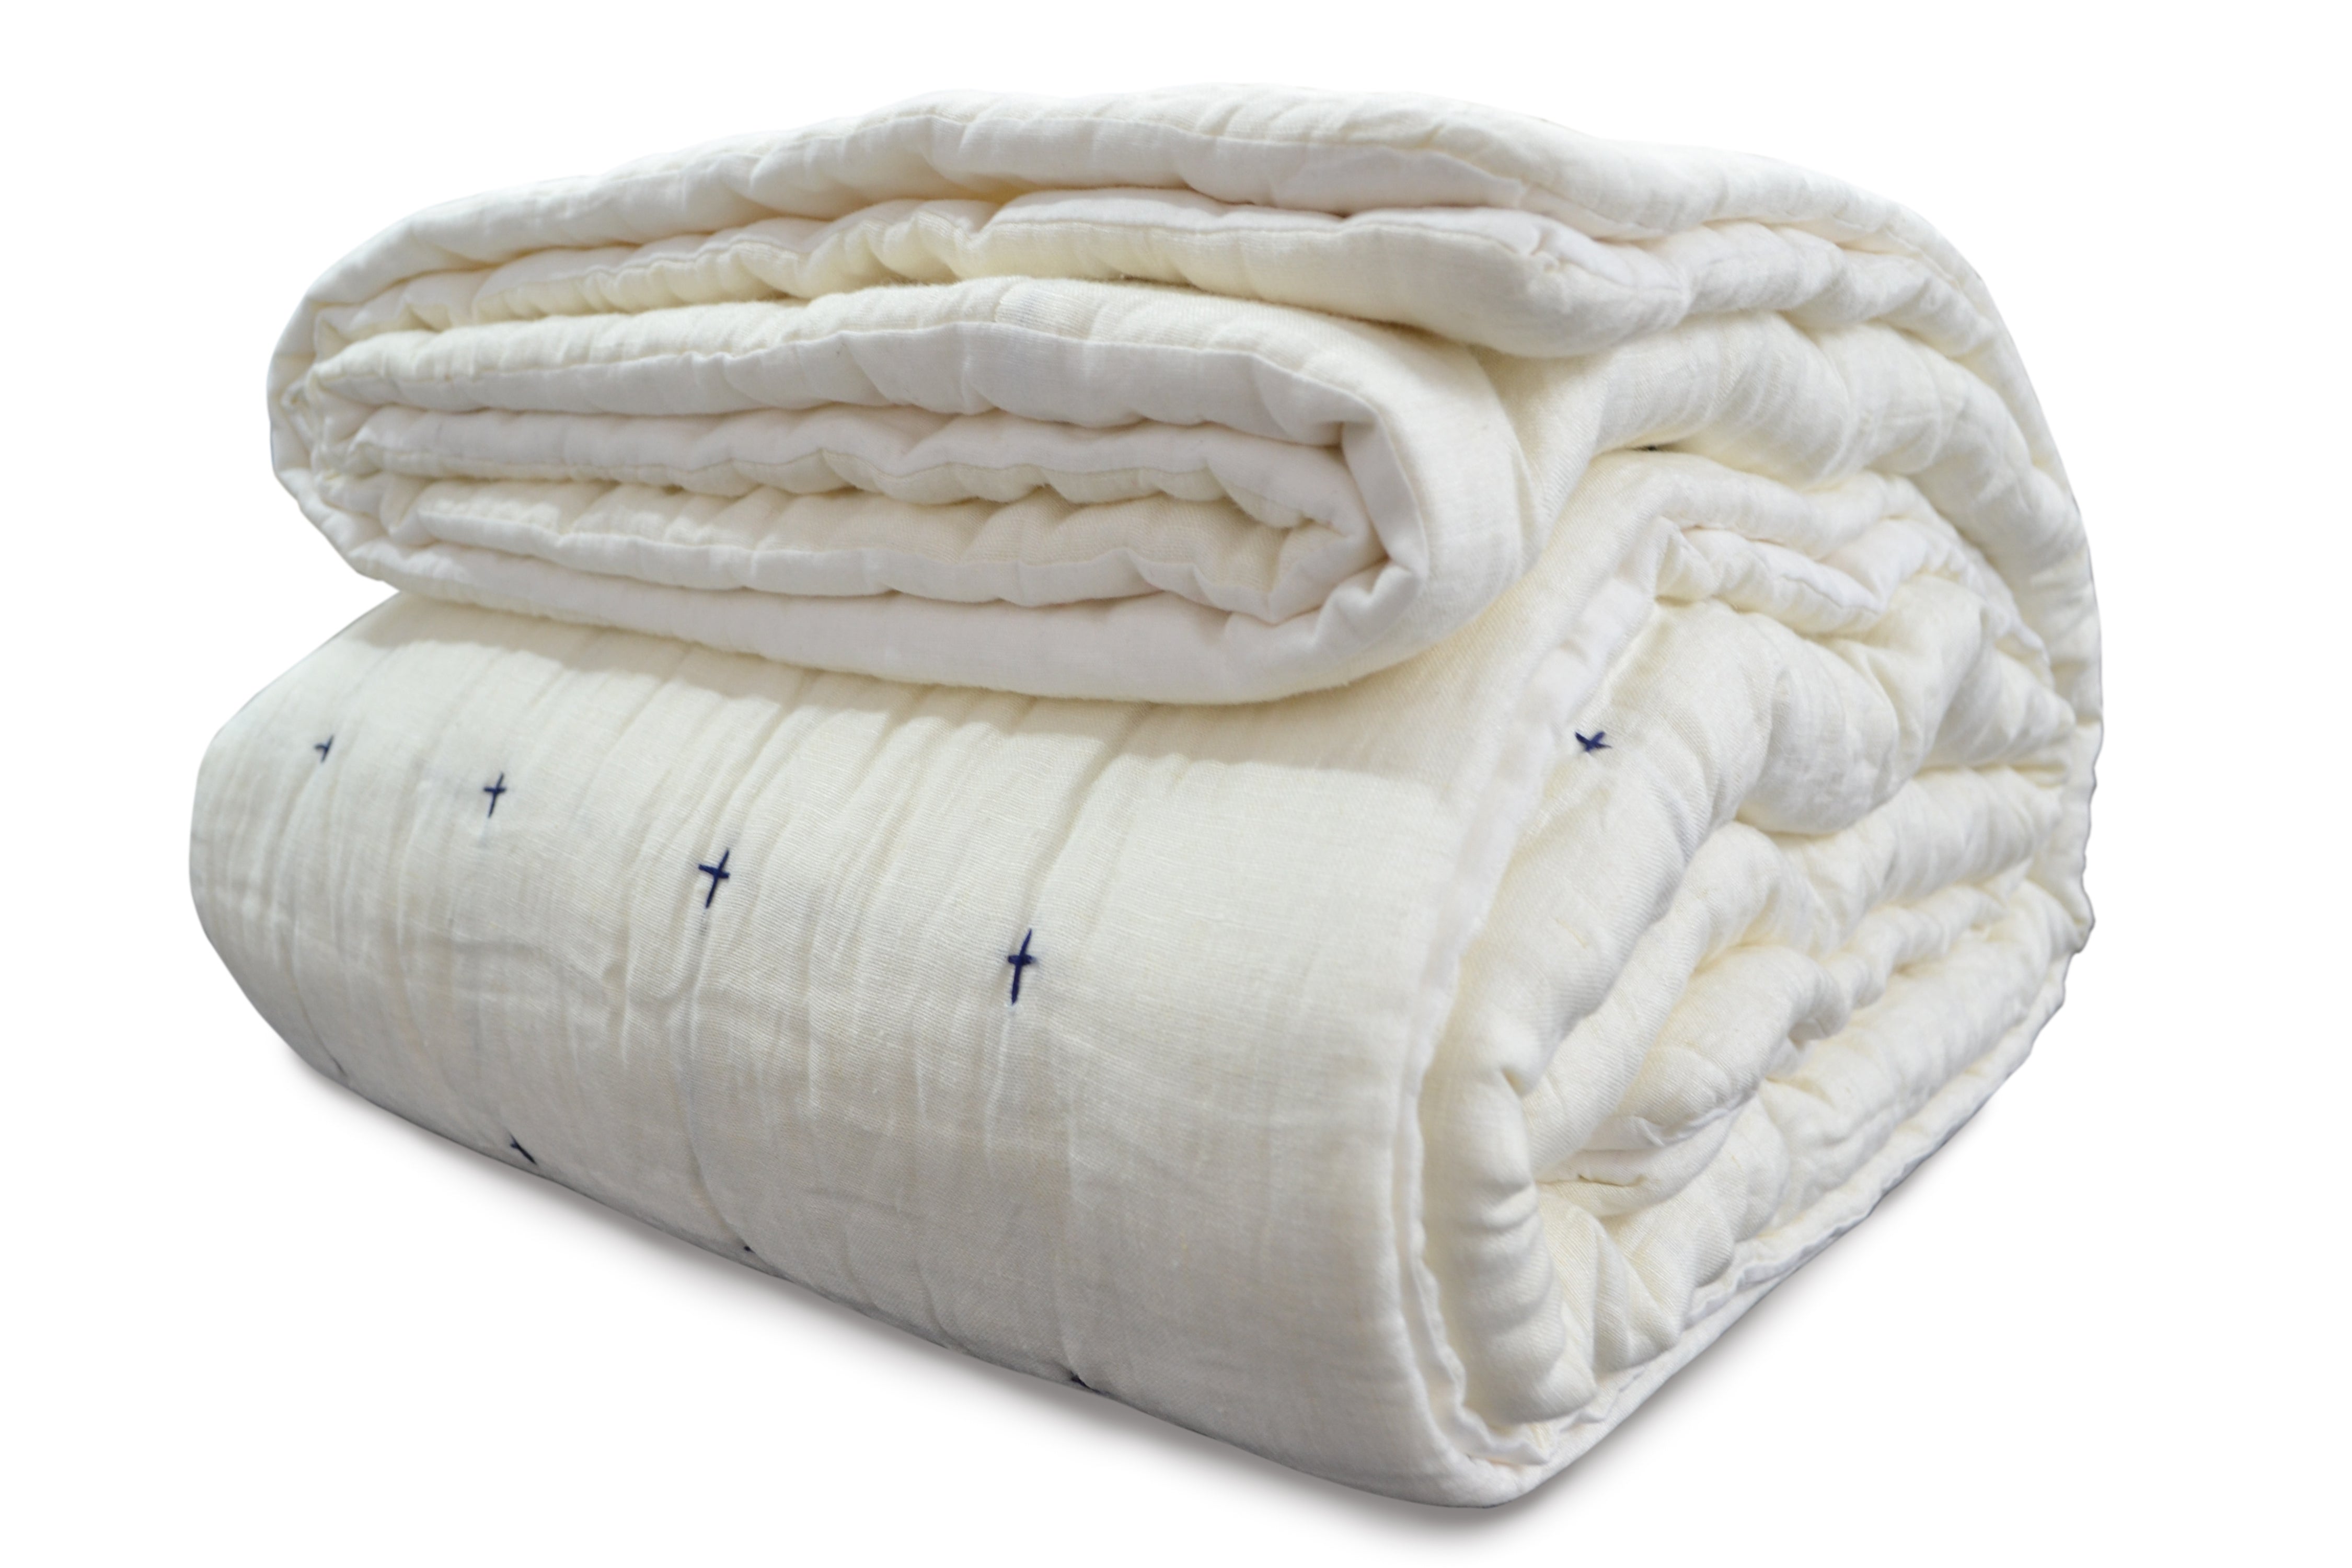 Handmade Lightweight Linen Quilt With Cotton Batting